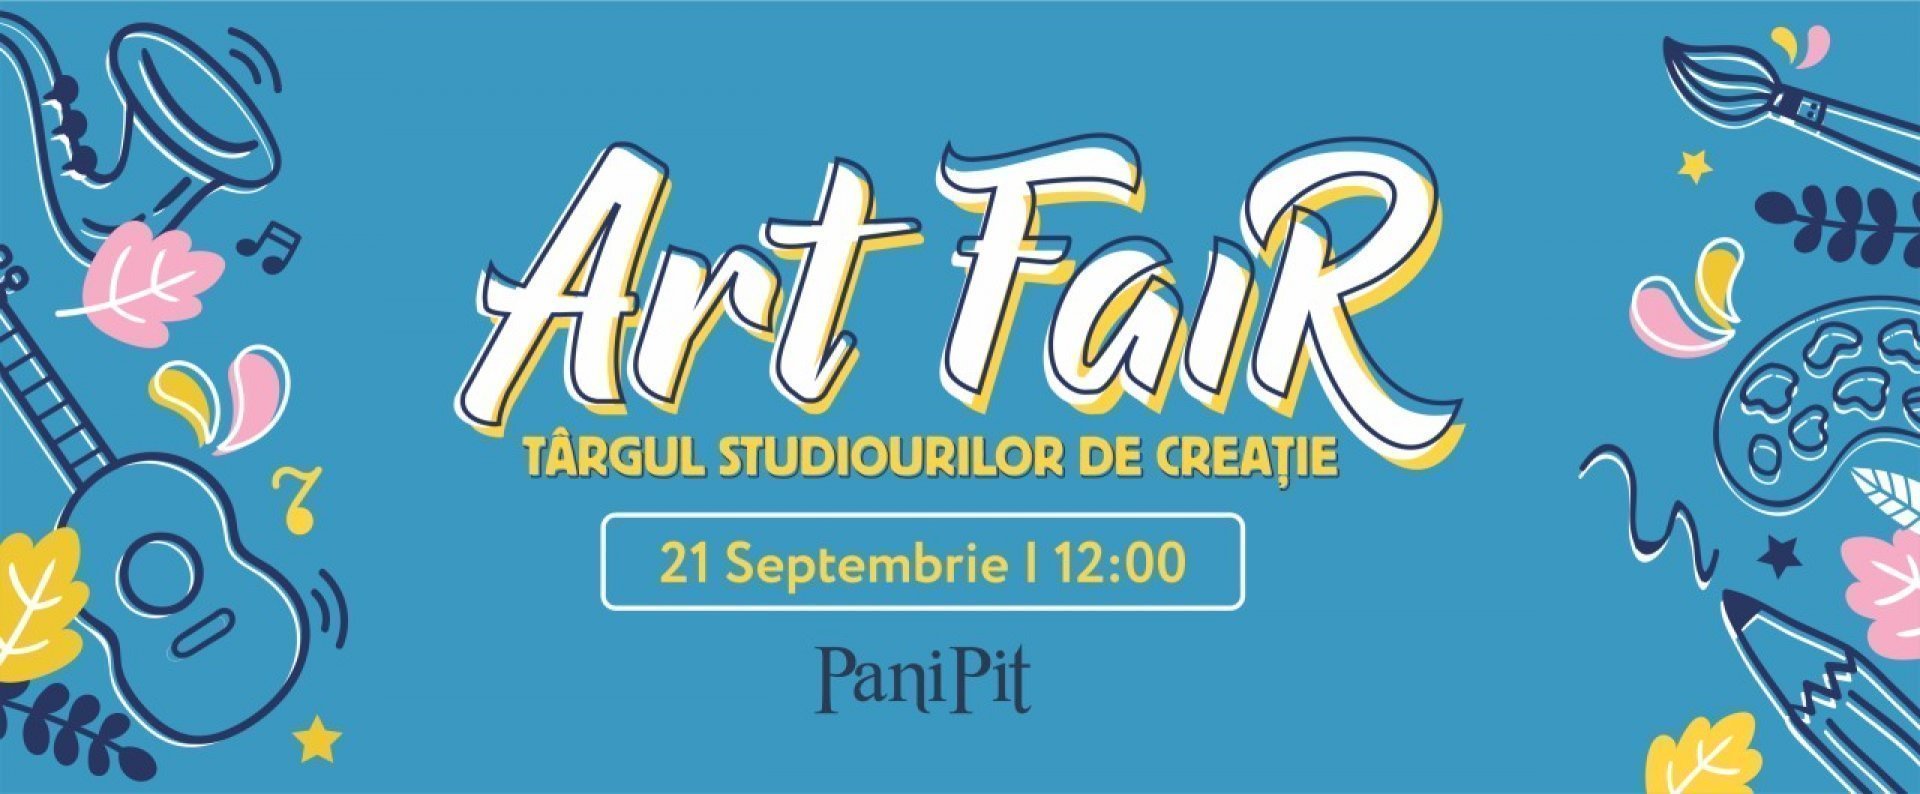 Art Fair